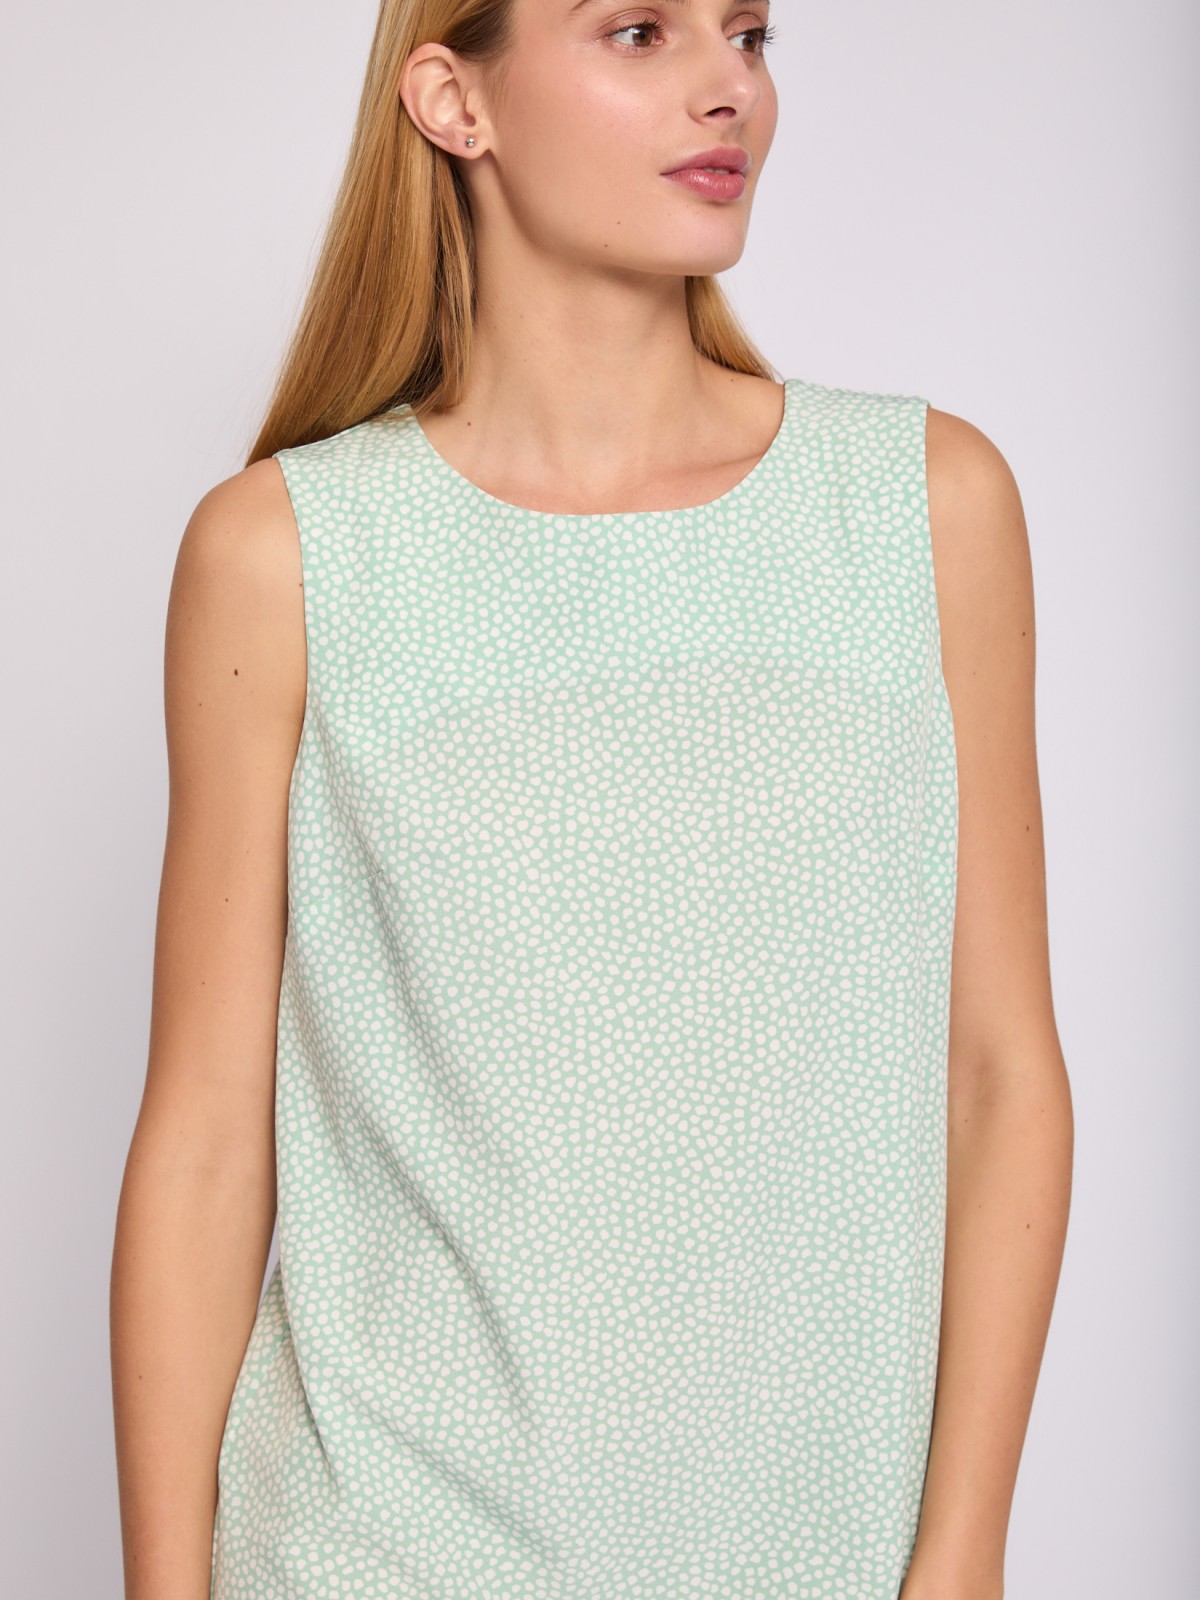 Платье мини без рукавов с вырезом на спине zolla 024238262232, цвет светло-зеленый, размер XS - фото 3